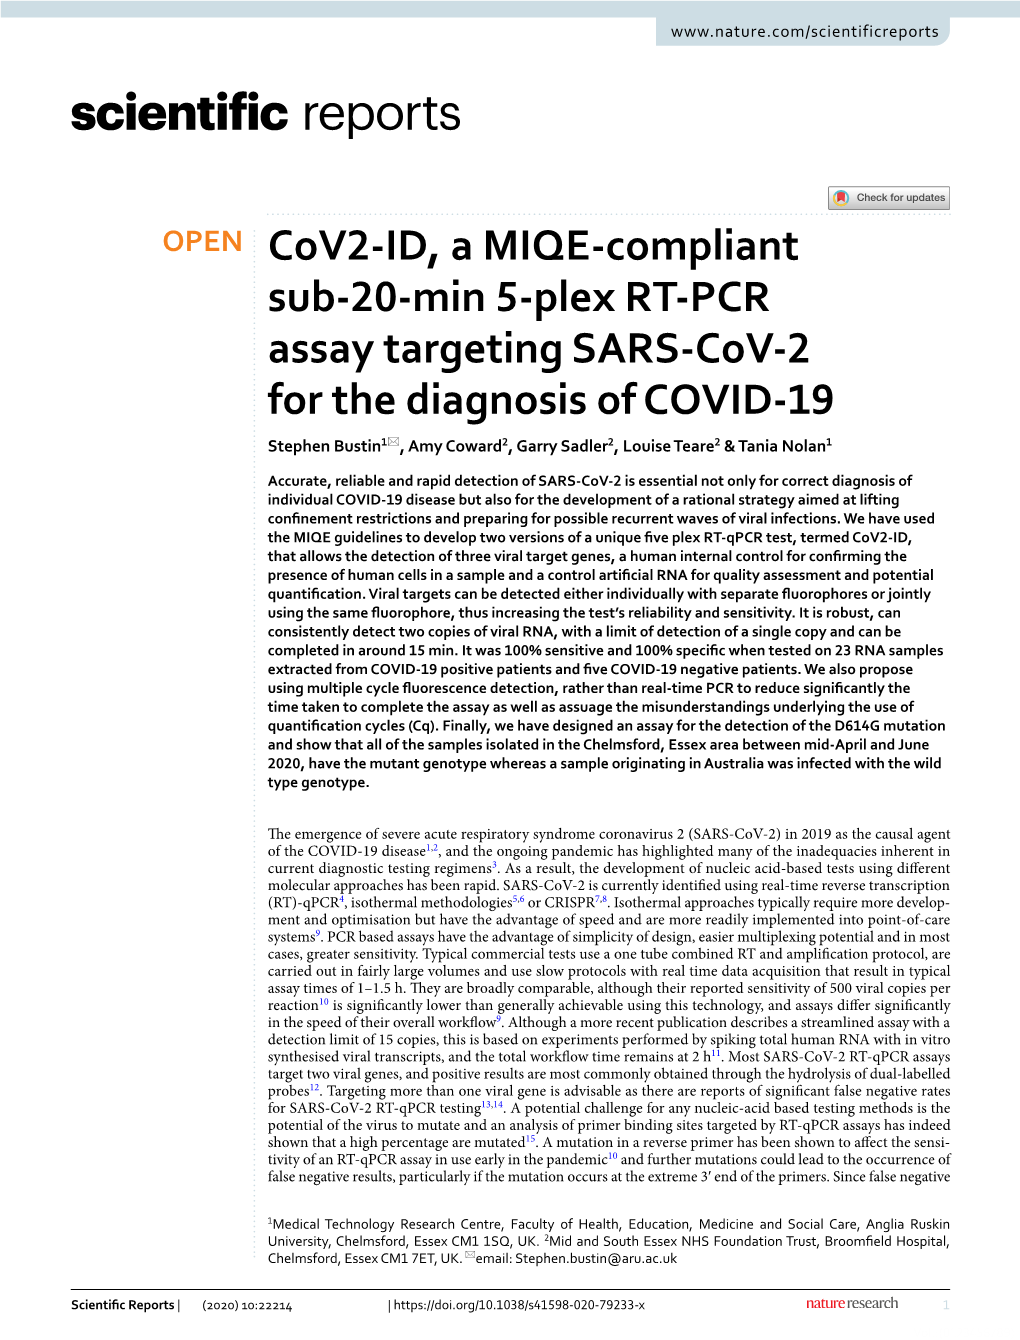 Cov2-ID, a MIQE-Compliant Sub-20-Min 5-Plex RT-PCR Assay